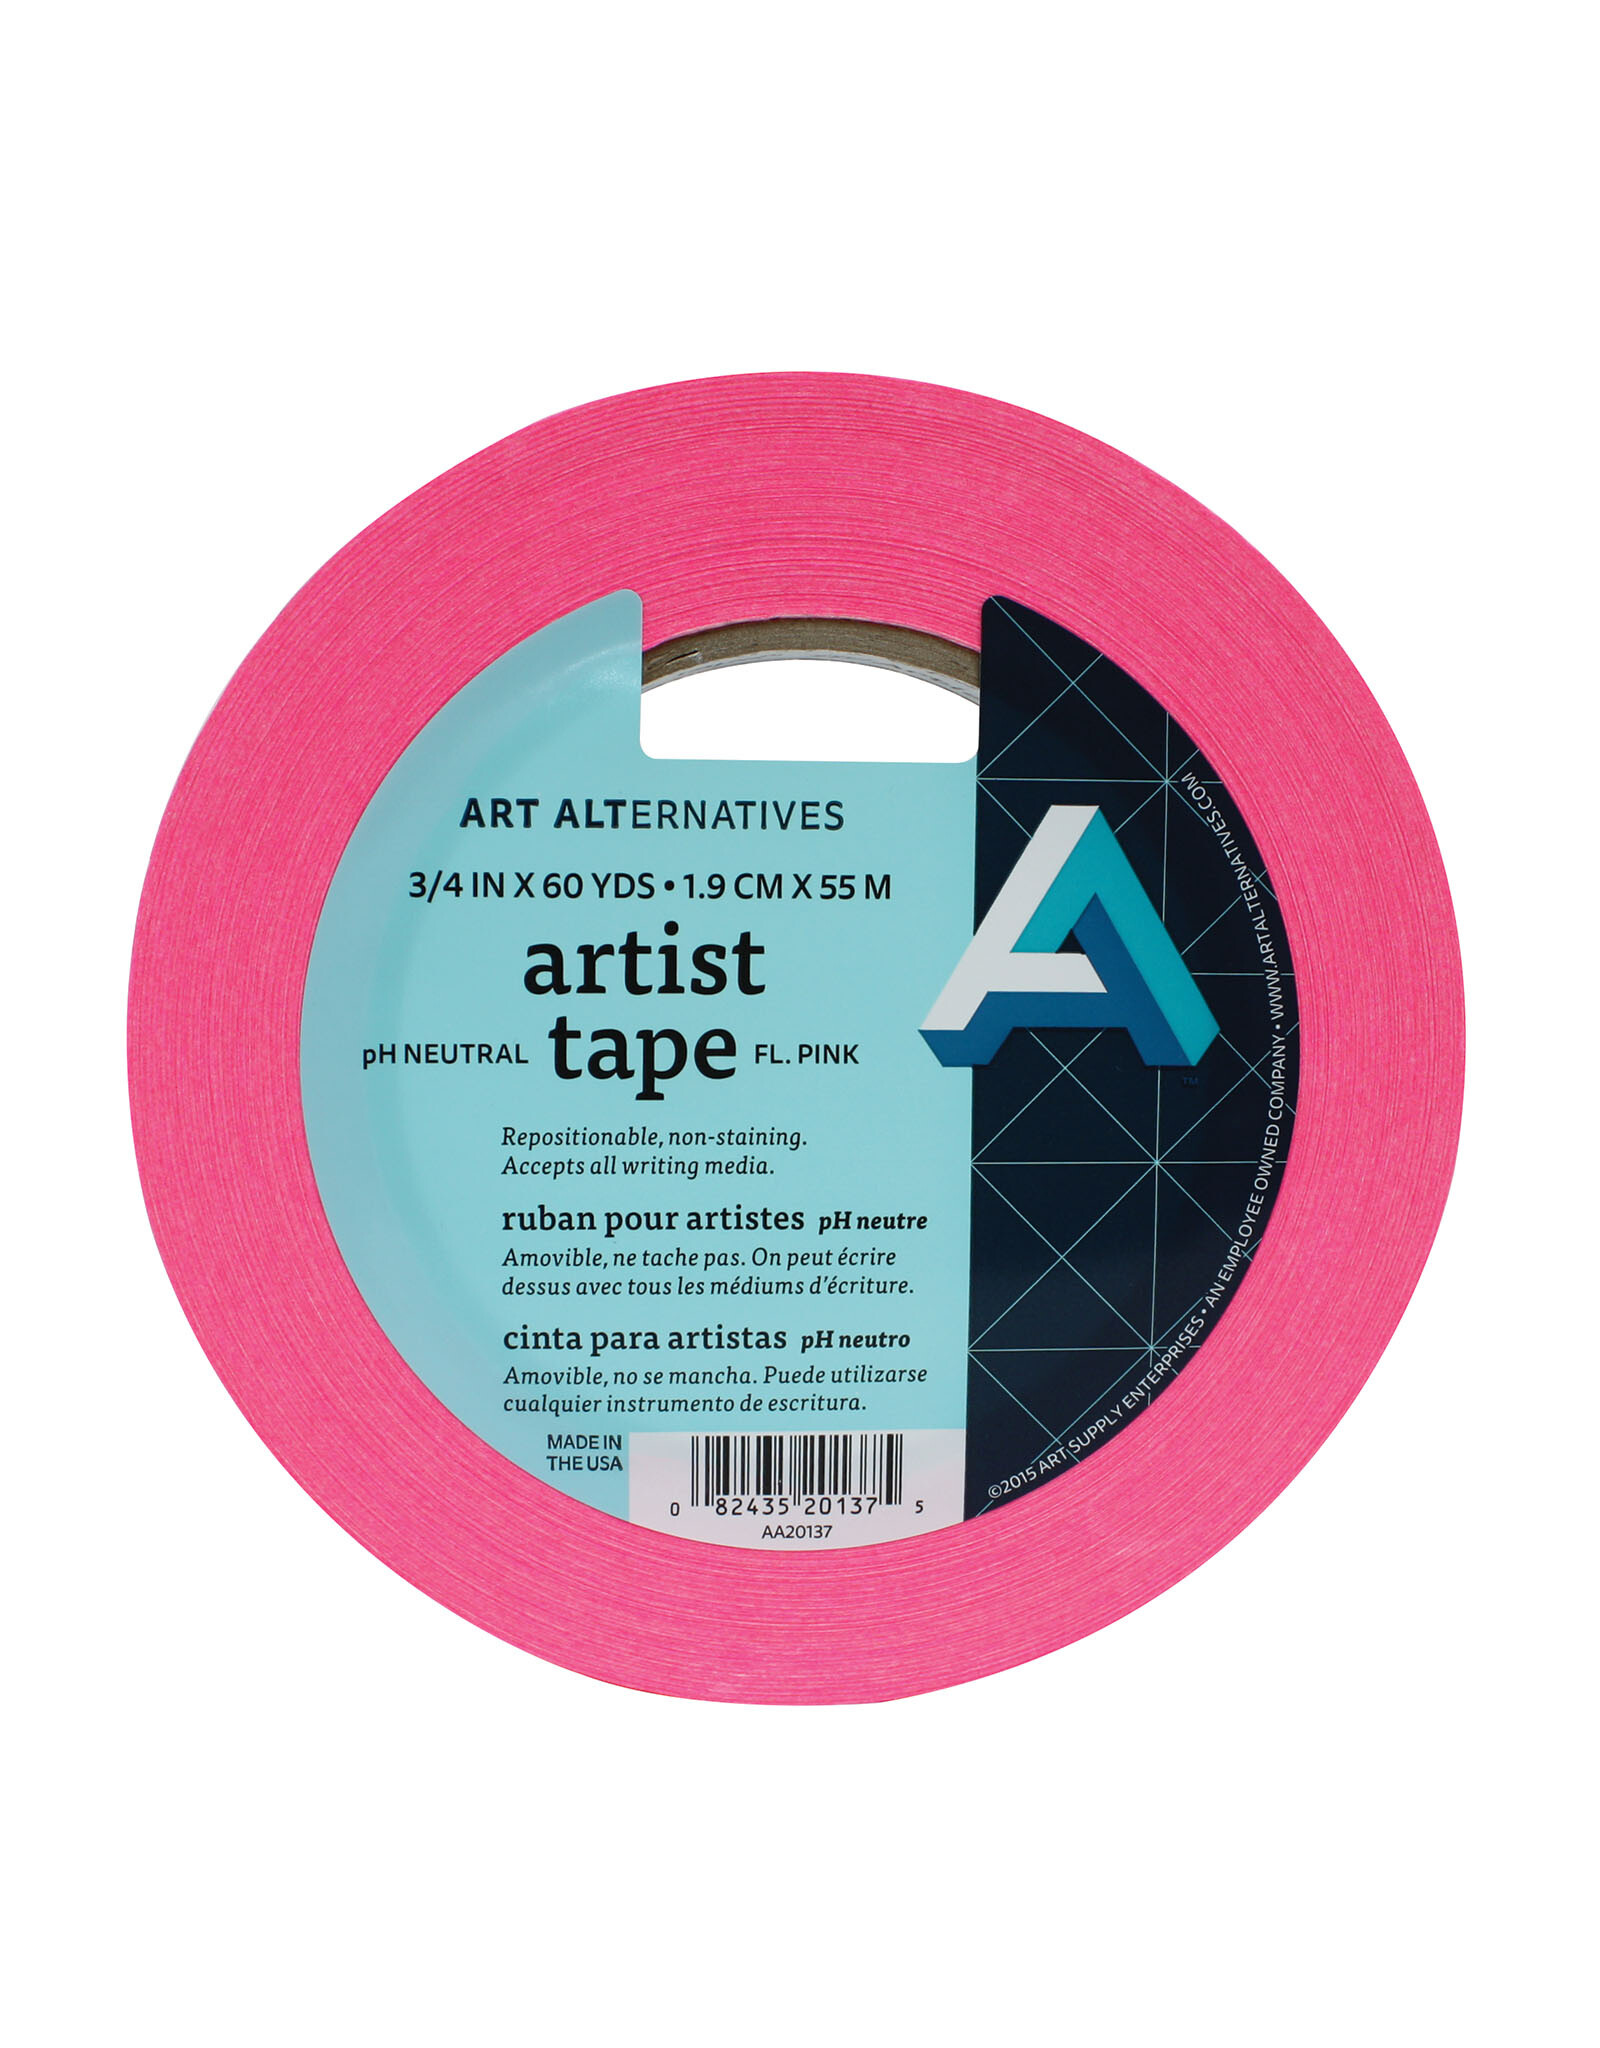 Art Alternatives Art Alternatives Artist Tape Fluorescent Pink ¾'' x 60yds